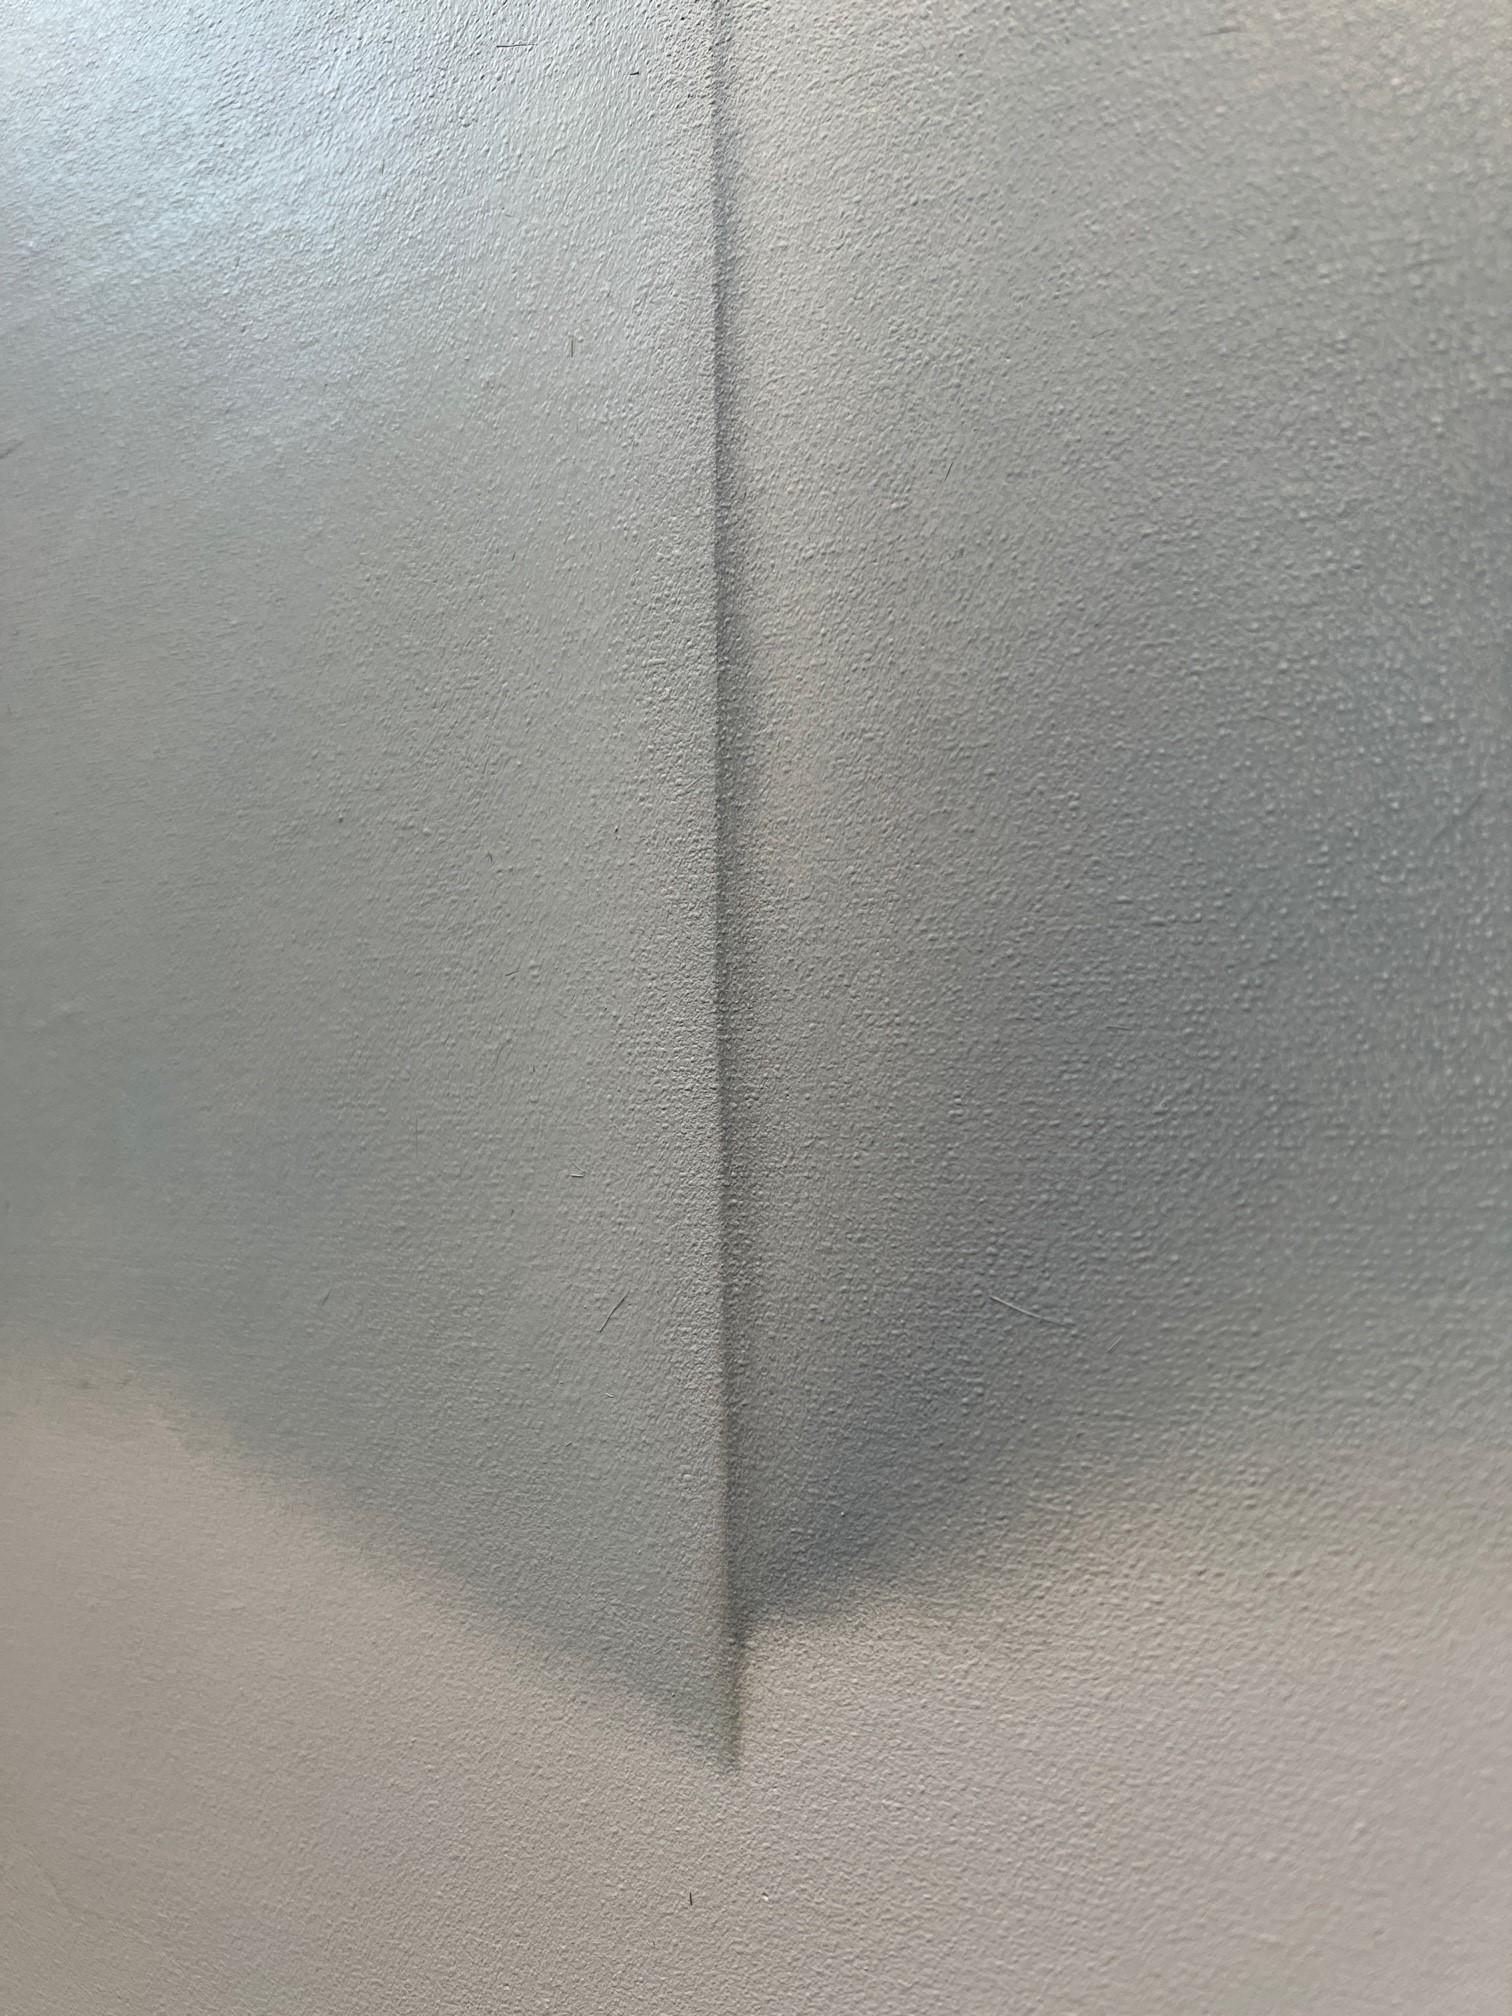 All Shades of Grey No.2 48 X 36 - Painting by Lalani Nan